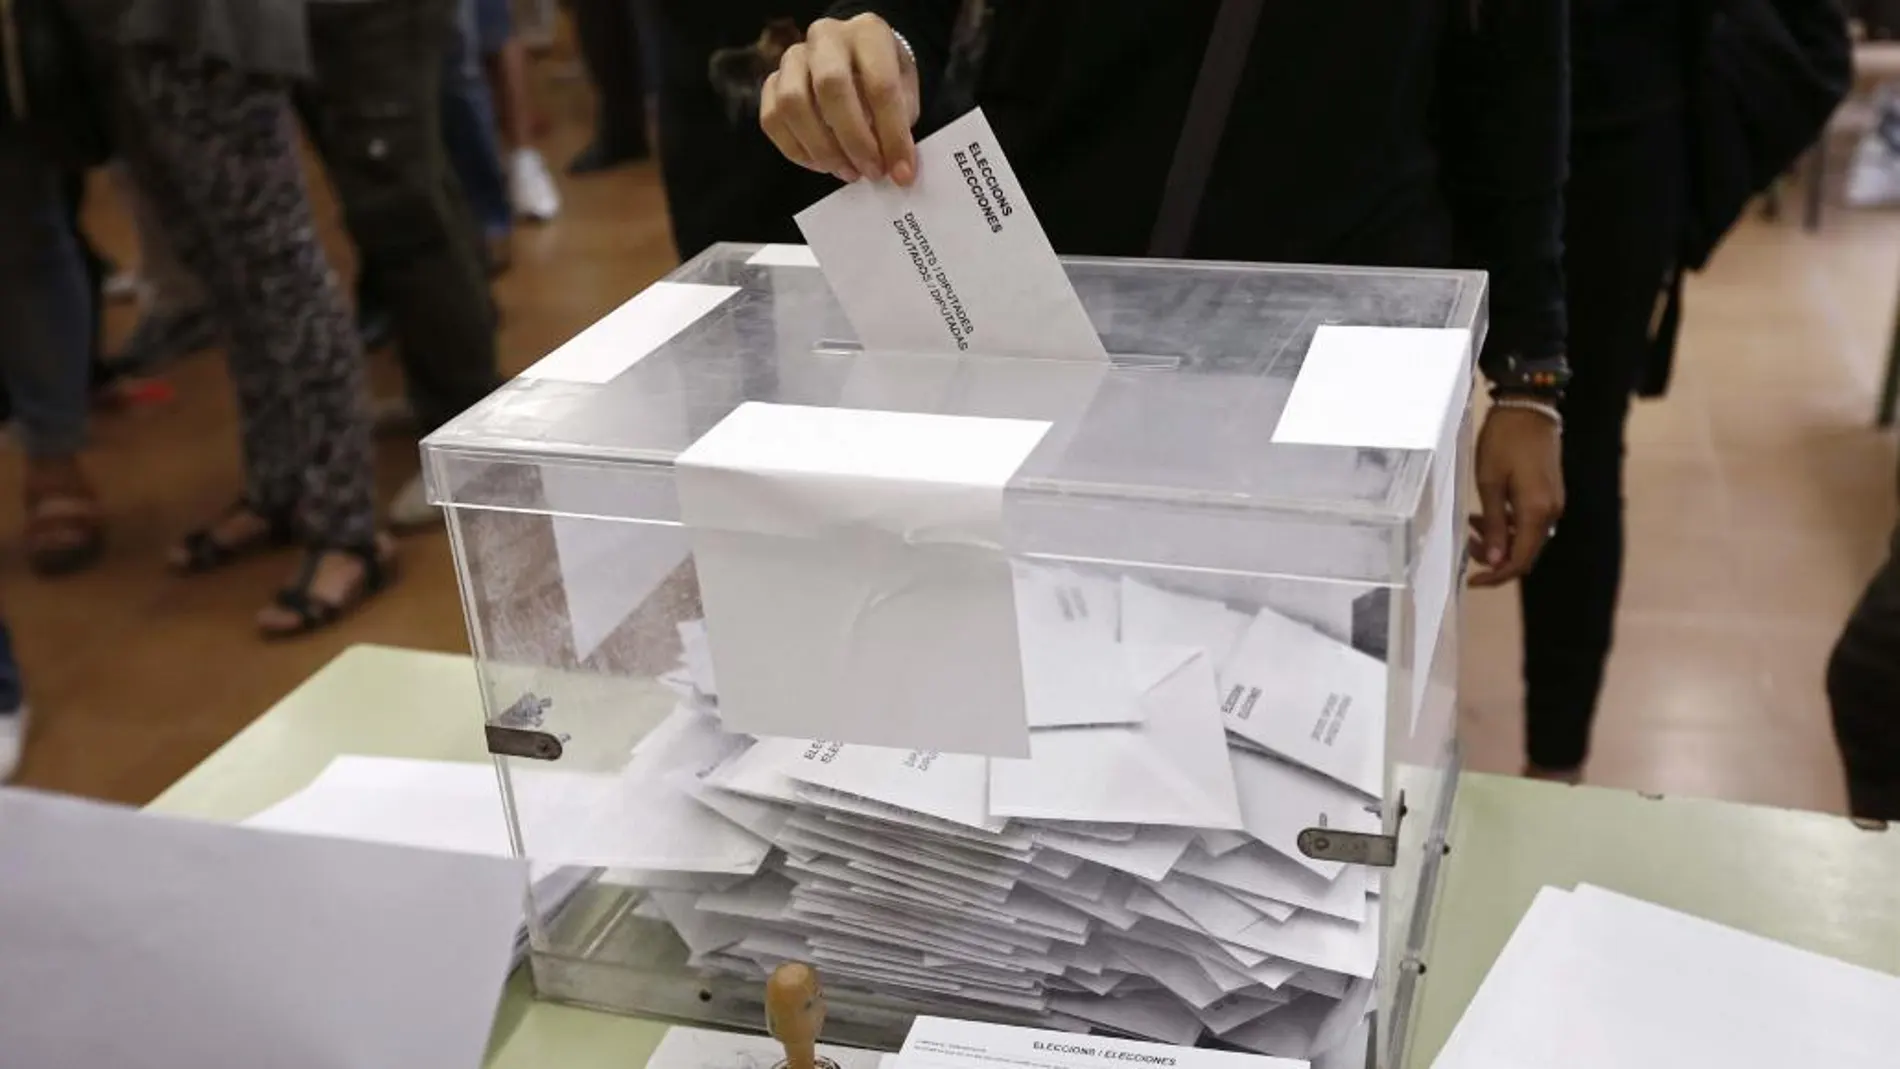 Cataluña se defiende en las urnas